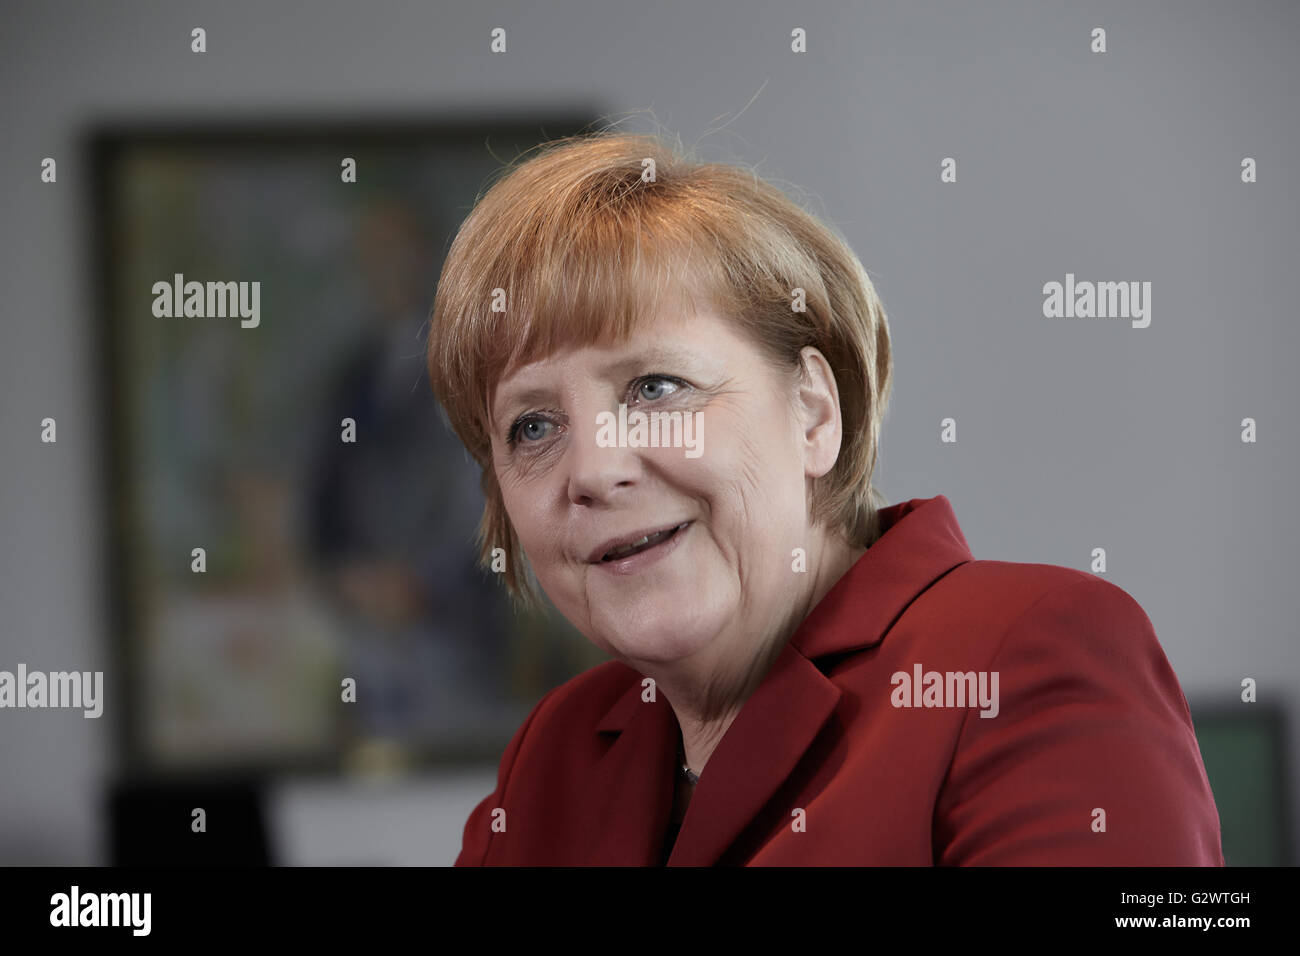 27.05.2013, Berlin, Berlin, Germania - Cancelliere Angela Merkel (CDU) gesti durante un colloquio presso la cancelleria federale a Berlino. 0PA130527D033CAROEX.JPG - non per la vendita in G E R M A N Y, A U S T R I A, S W I T Z e R L A N D [modello di rilascio: NO, la proprietà di rilascio: NO, (c) caro agenzia fotografica / Ponizak, http://www.caro-images.com, info@carofoto.pl - Qualsiasi uso di questa immagine è soggetto a royalty!] Foto Stock